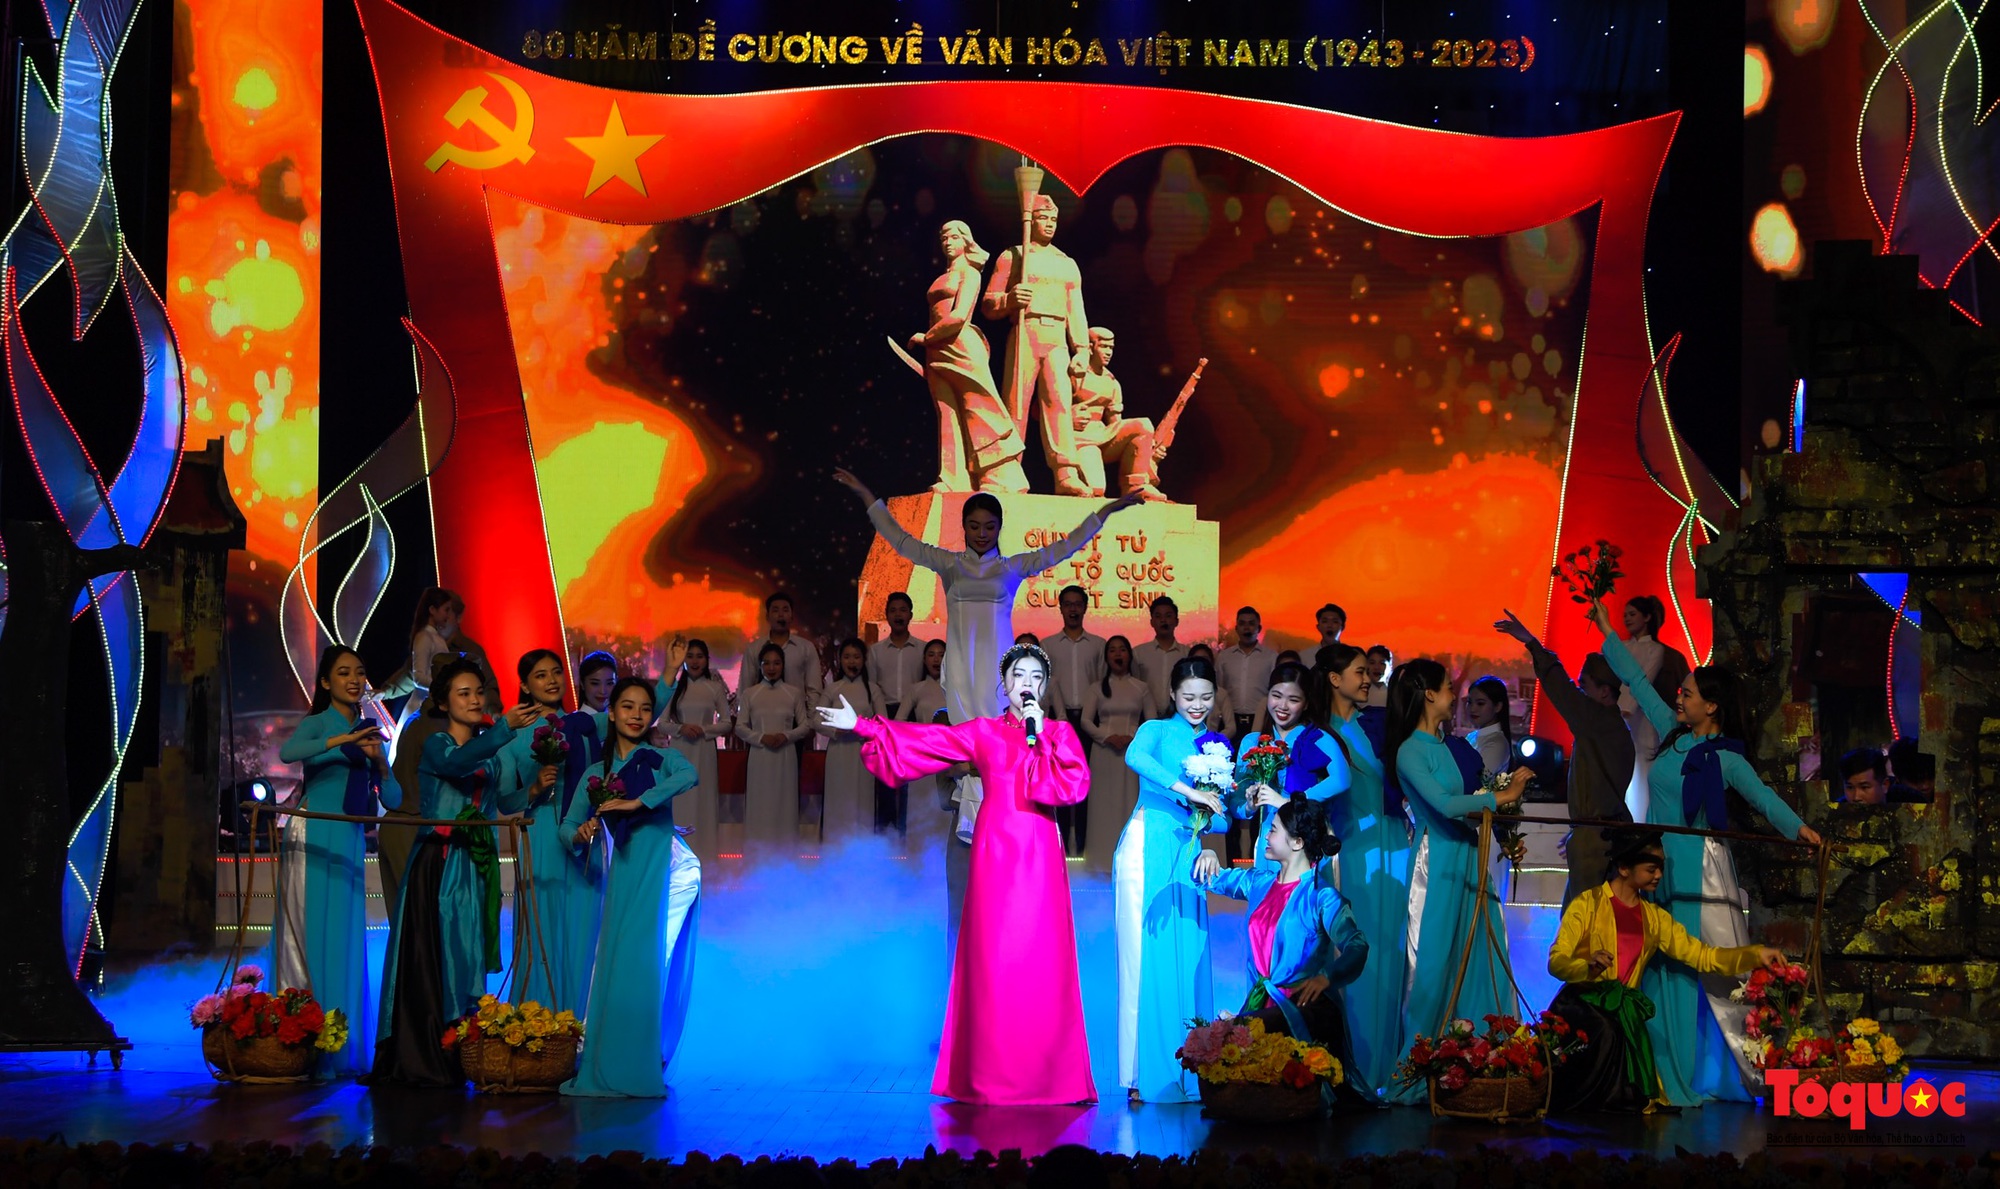 Chùm ảnh: Lễ kỷ niệm và chương trình nghệ thuật đặc biệt kỷ niệm 80 năm ra đời Đề cương văn hóa Việt Nam - Ảnh 14.